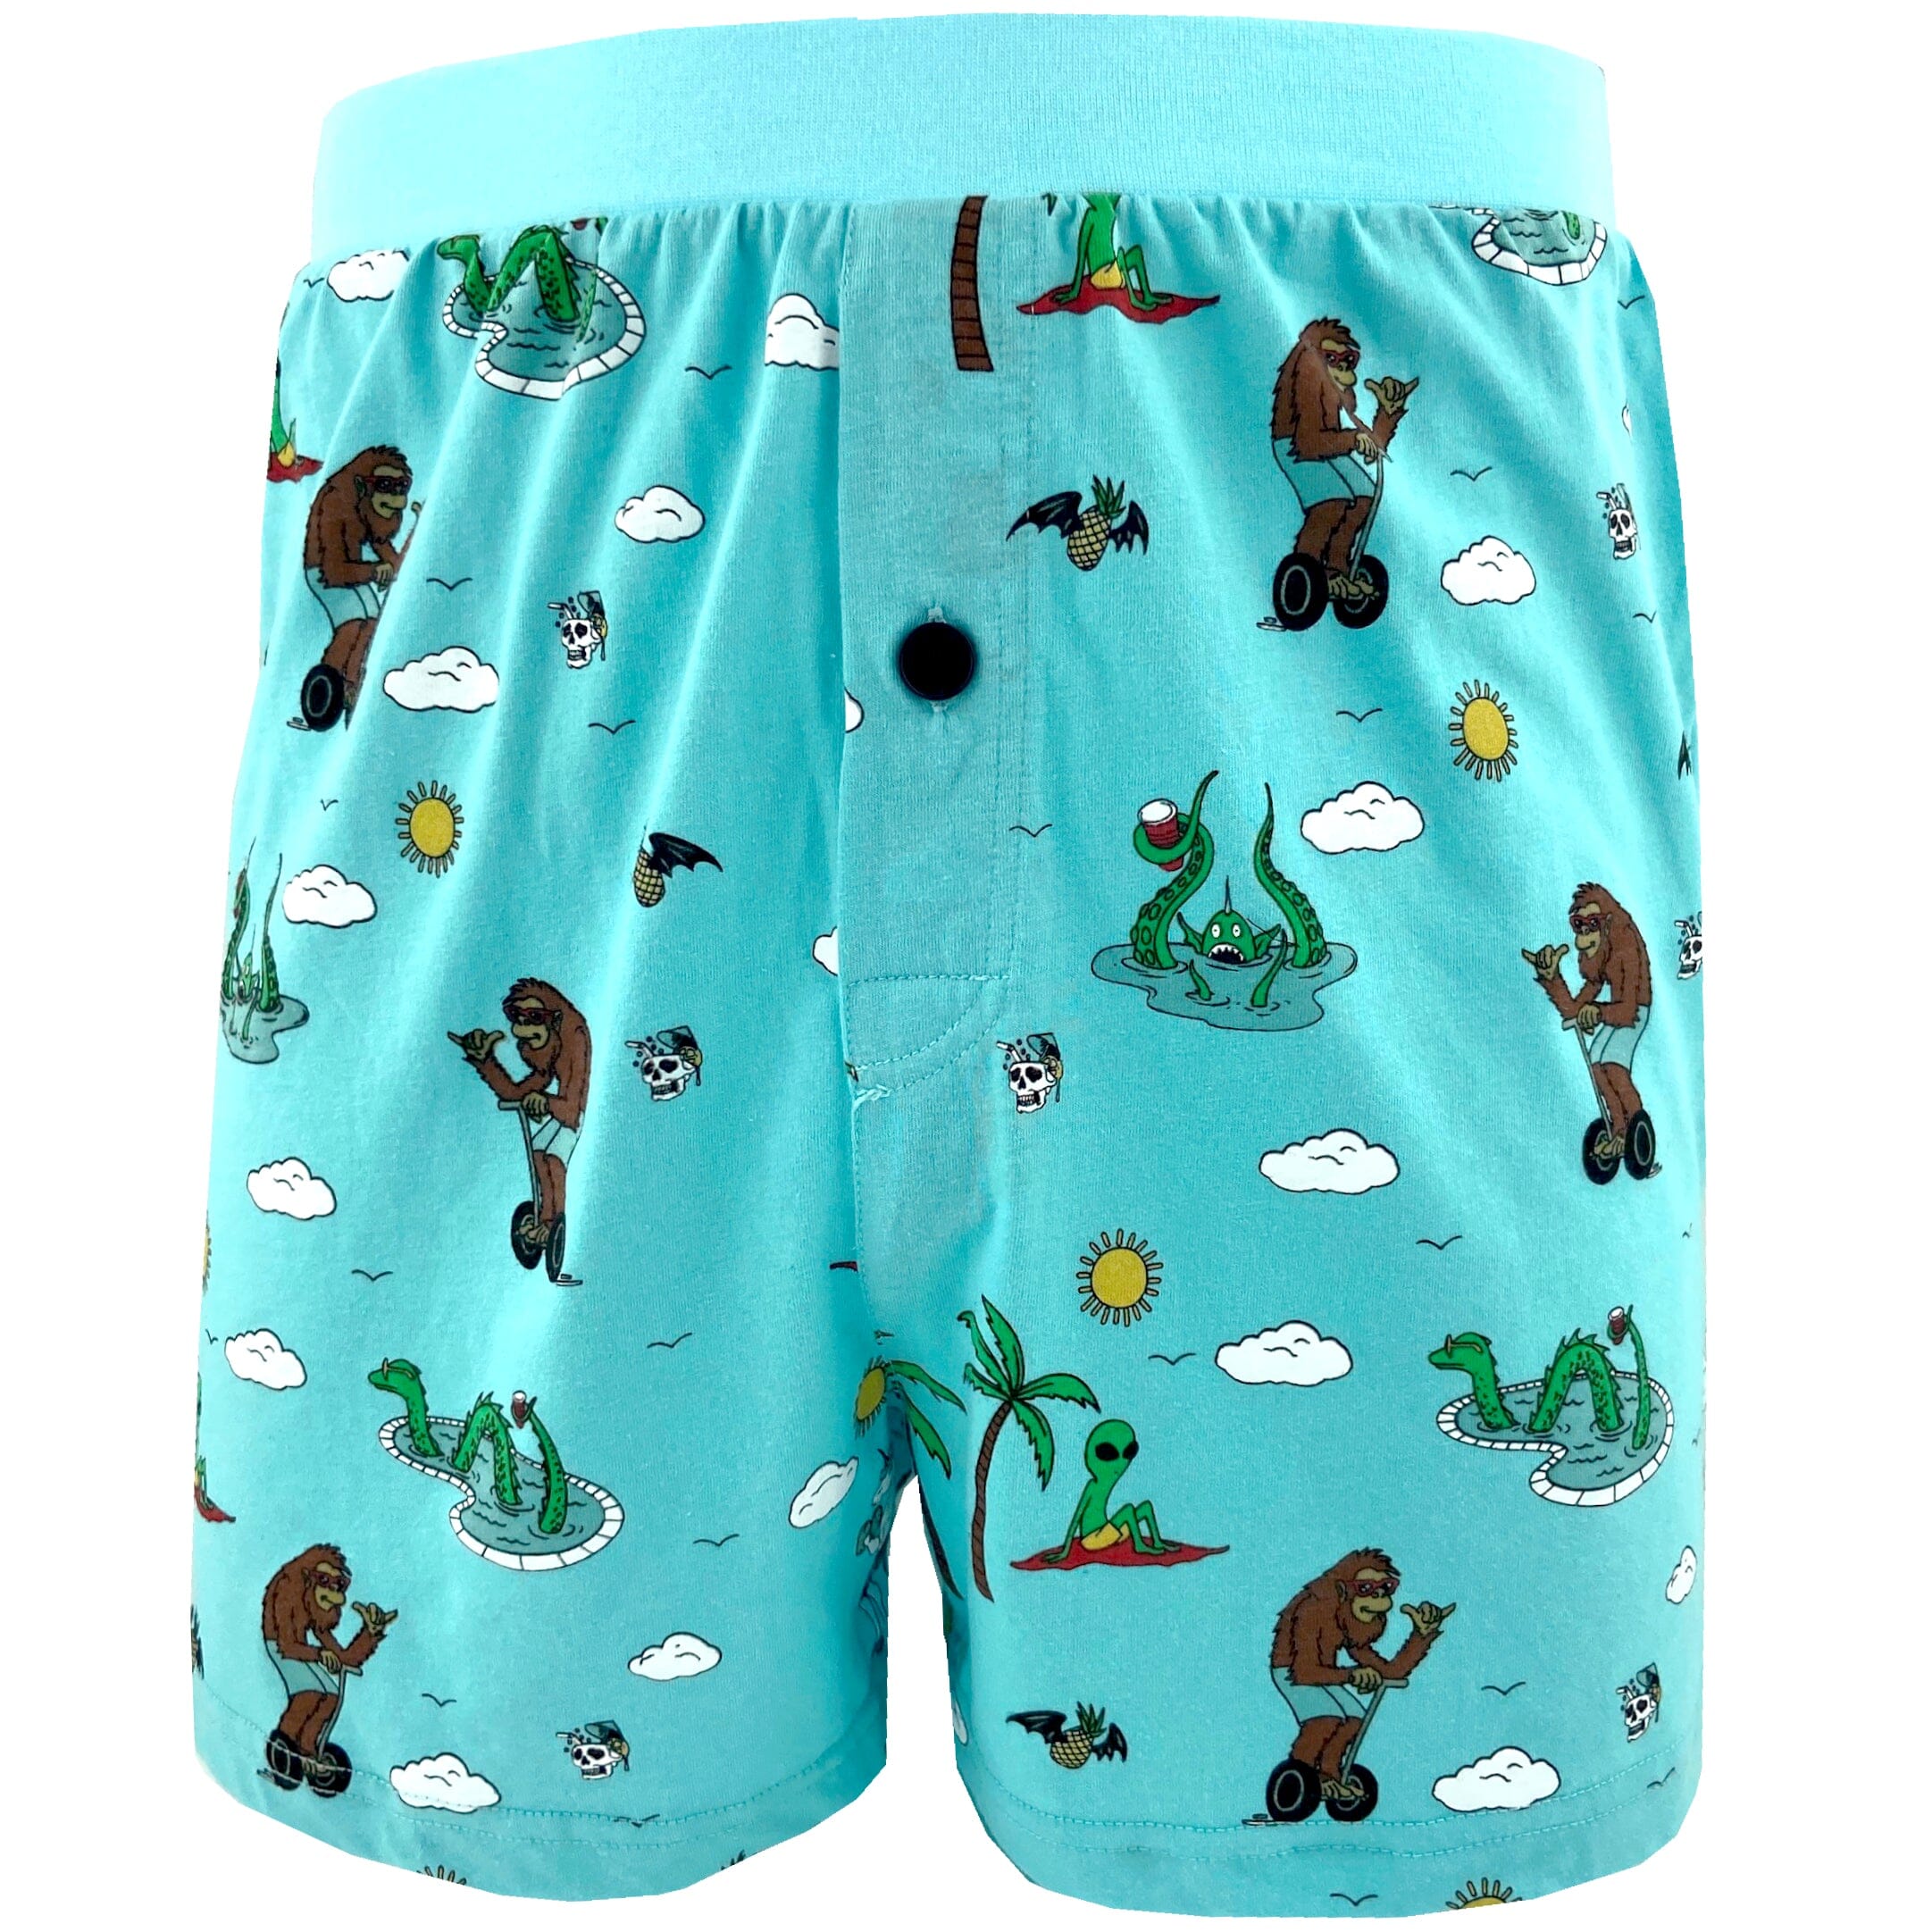 Men's Trippy Unicorn Yeti Loch Ness Alien Novelty Print Pajama Shorts